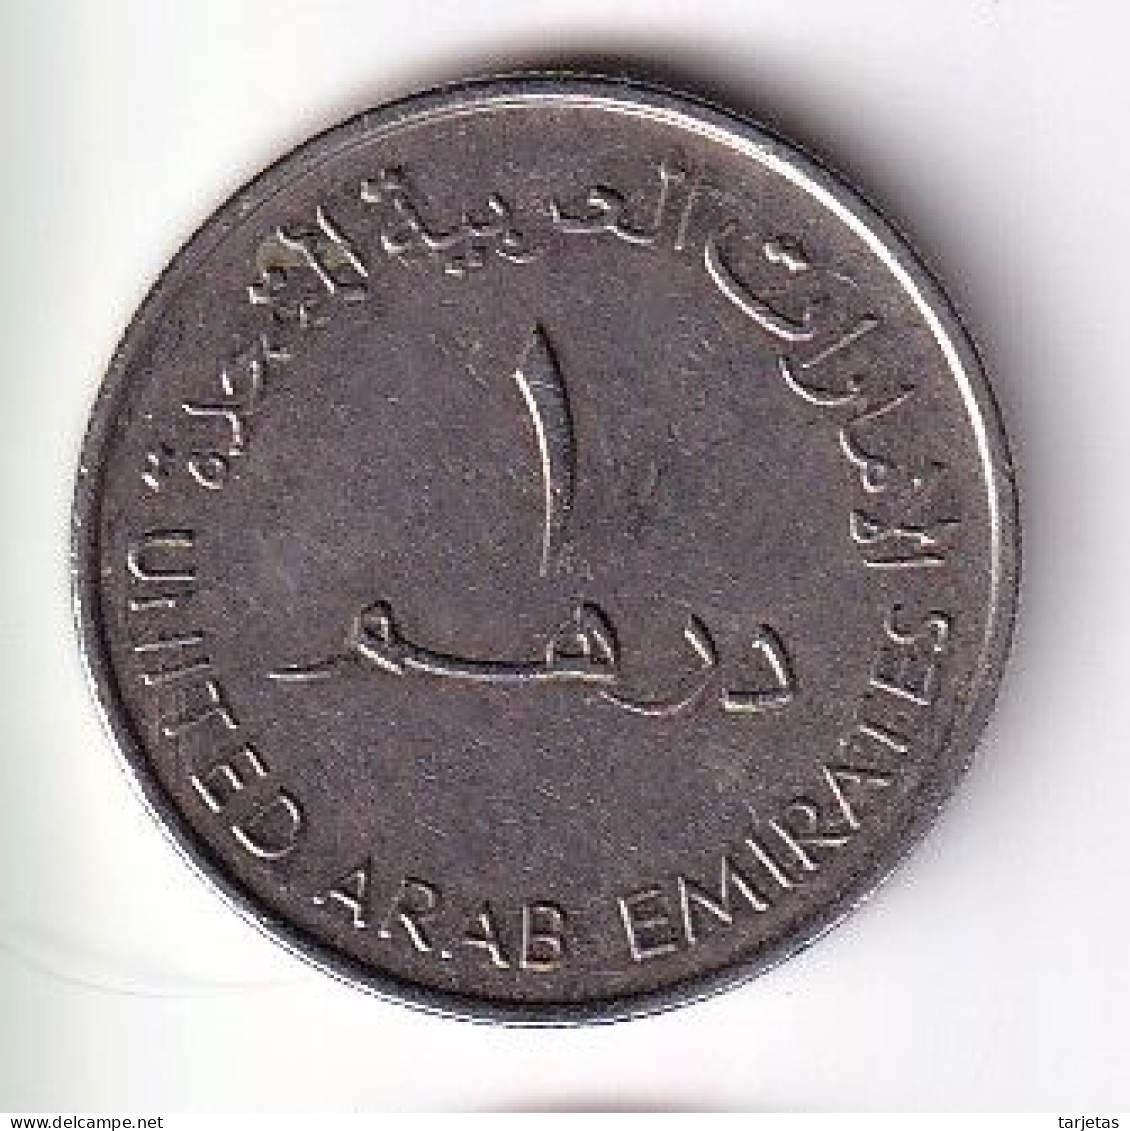 MONEDA DE EMIRATOS ARABES DE 1 DIRHAM DEL AÑO 2010 - I LOVE UAE (COIN) - United Arab Emirates